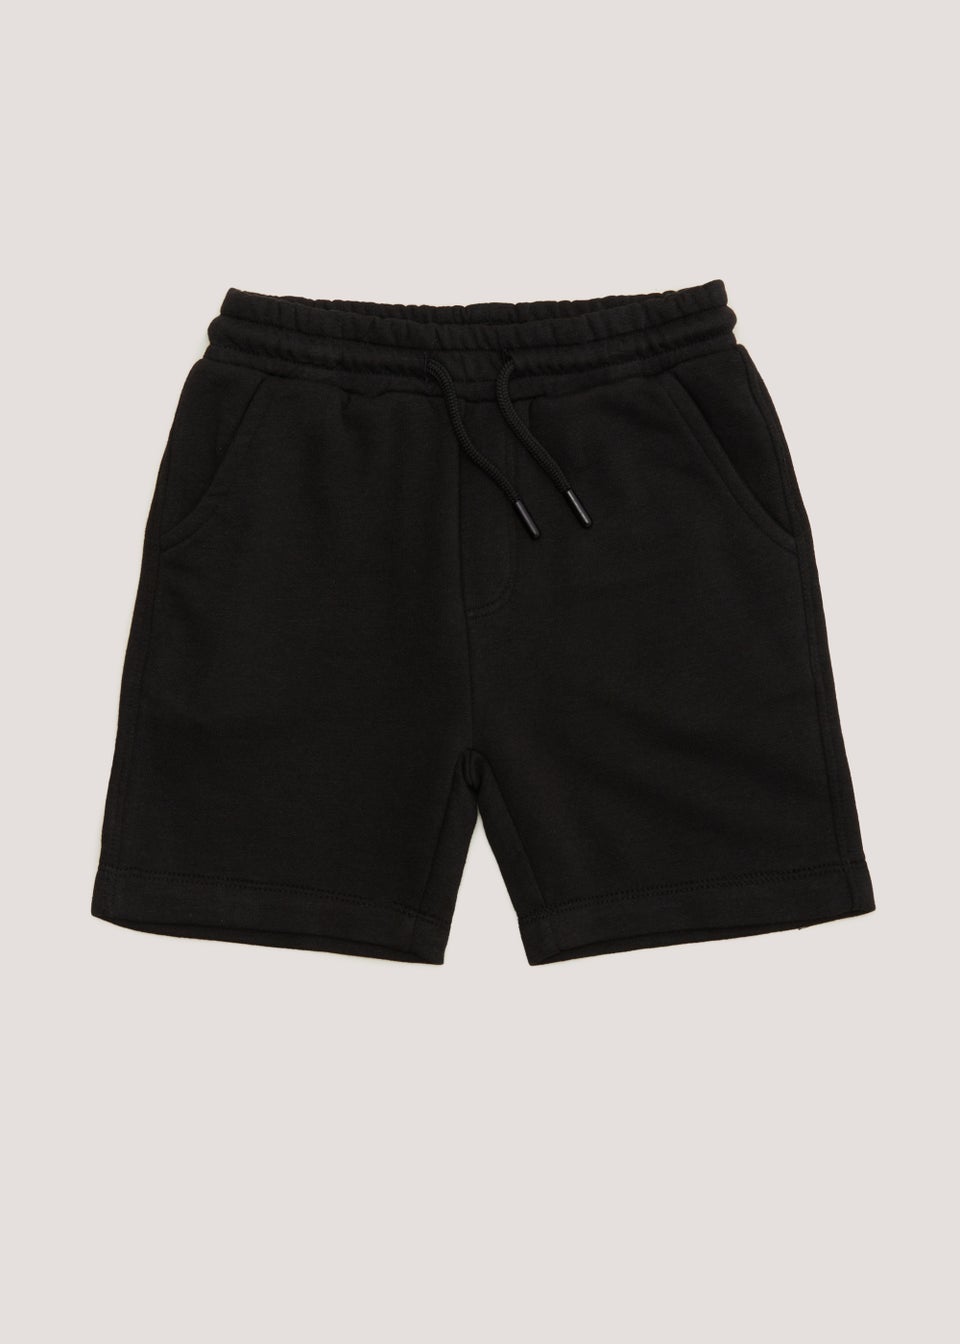 Boys Black Jogger Shorts (4-13yrs) - Matalan